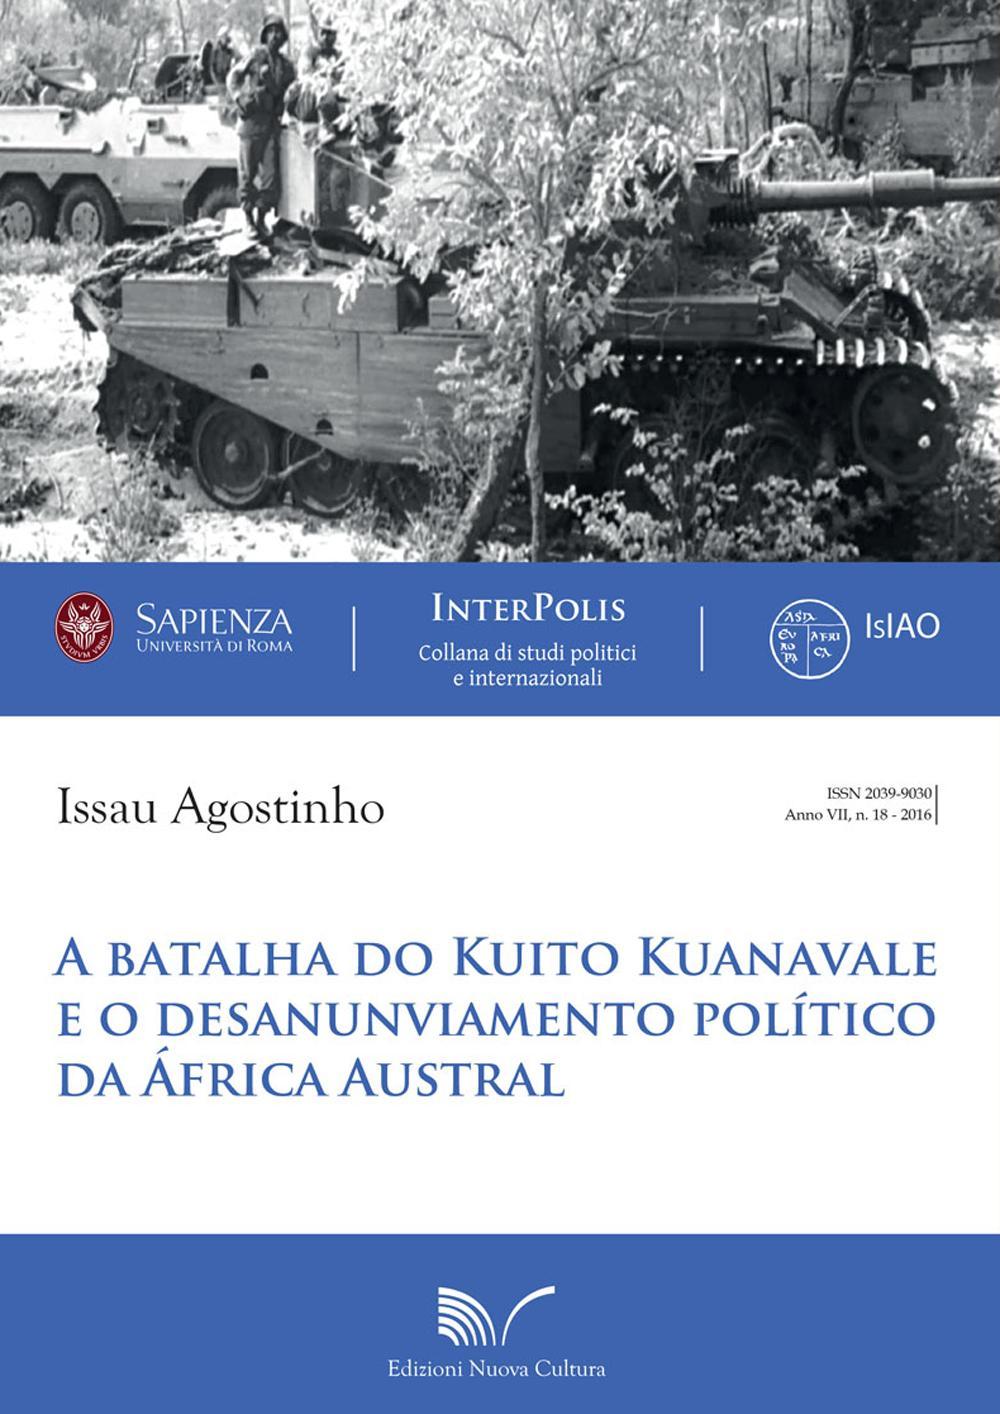 A Batalha do Kuito Kuanavale e o desanunviamento político da África Austral